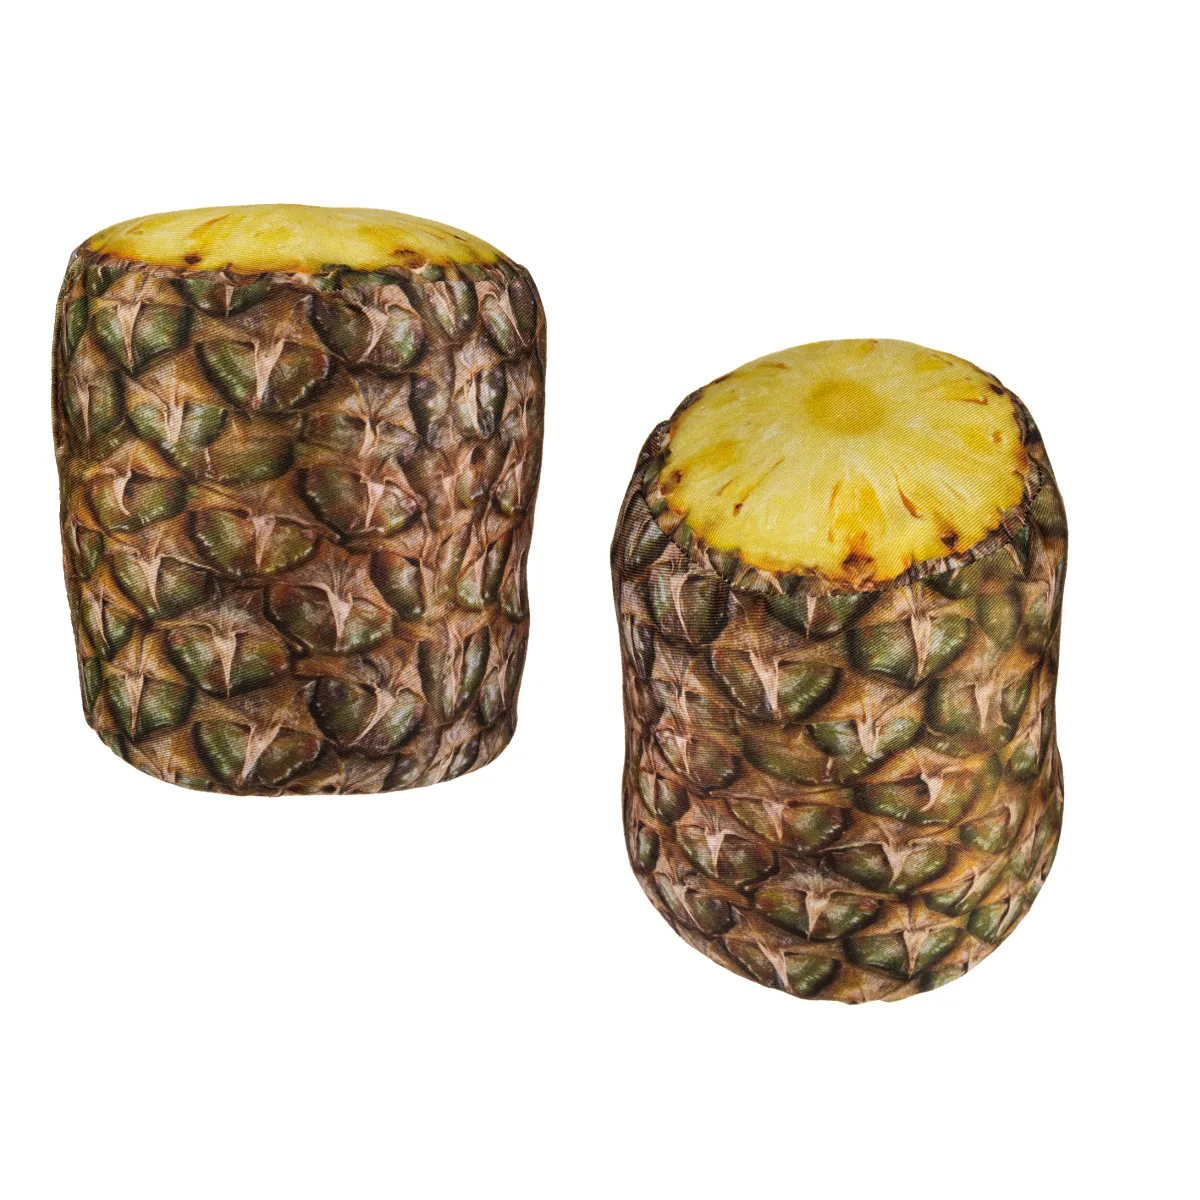 Stofftürstopper im fruchtigen Ananas-Design